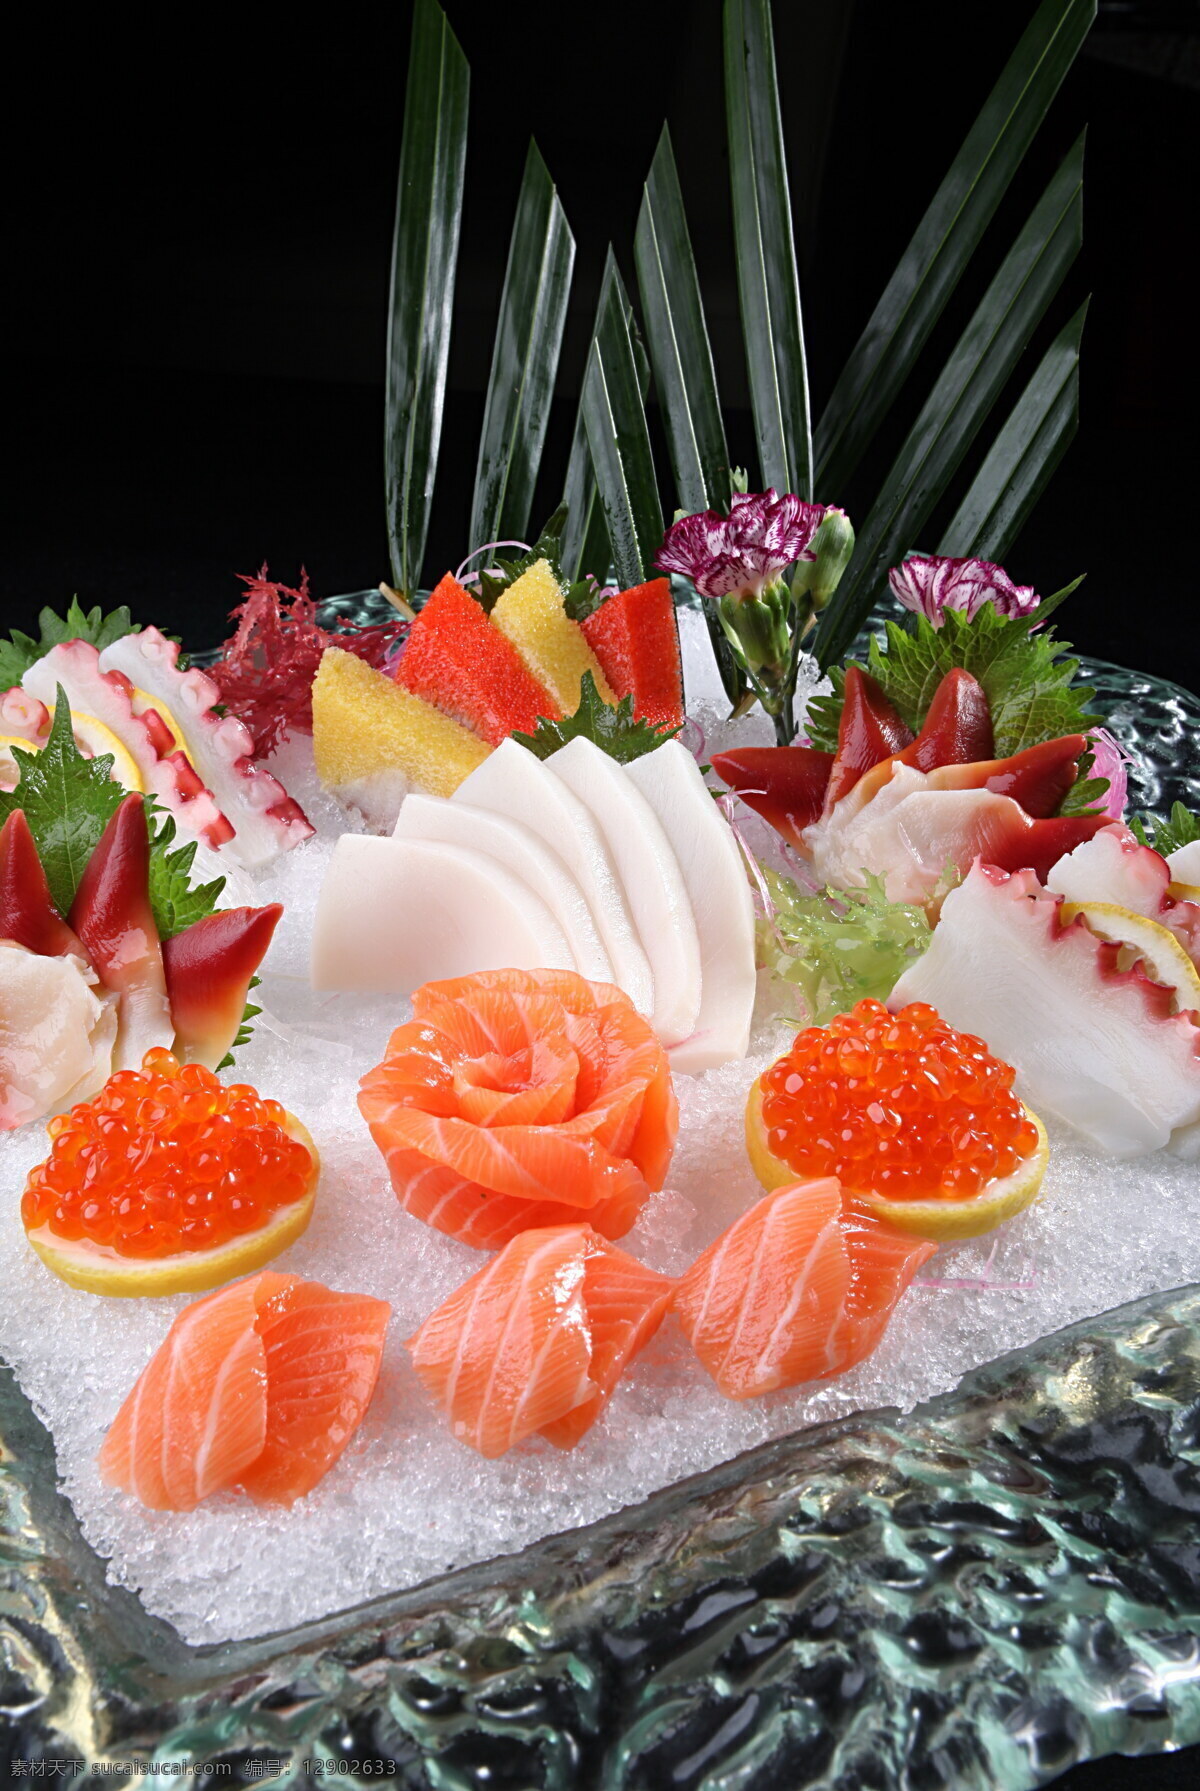 锦绣刺身 日本菜 刺身 料理 海鲜 美食高清图 餐饮美食